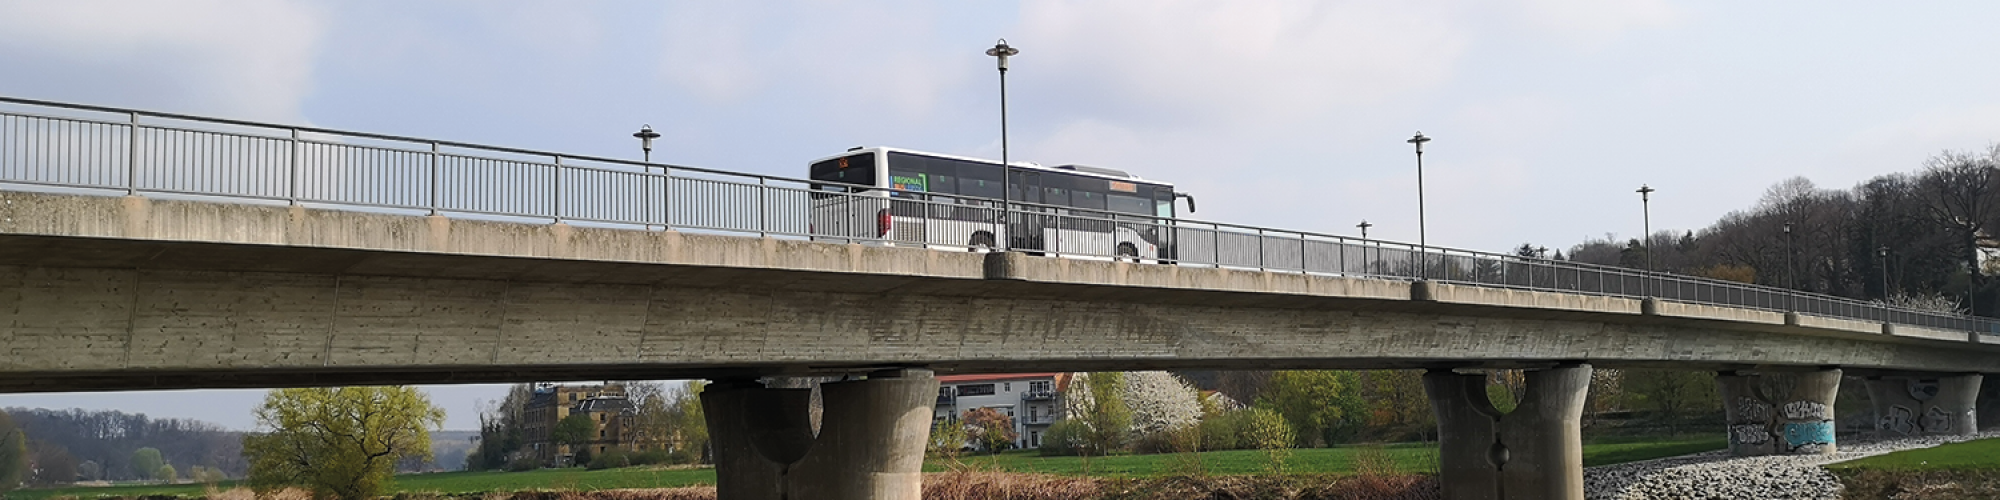 Regionalbus Leipzig GmbH